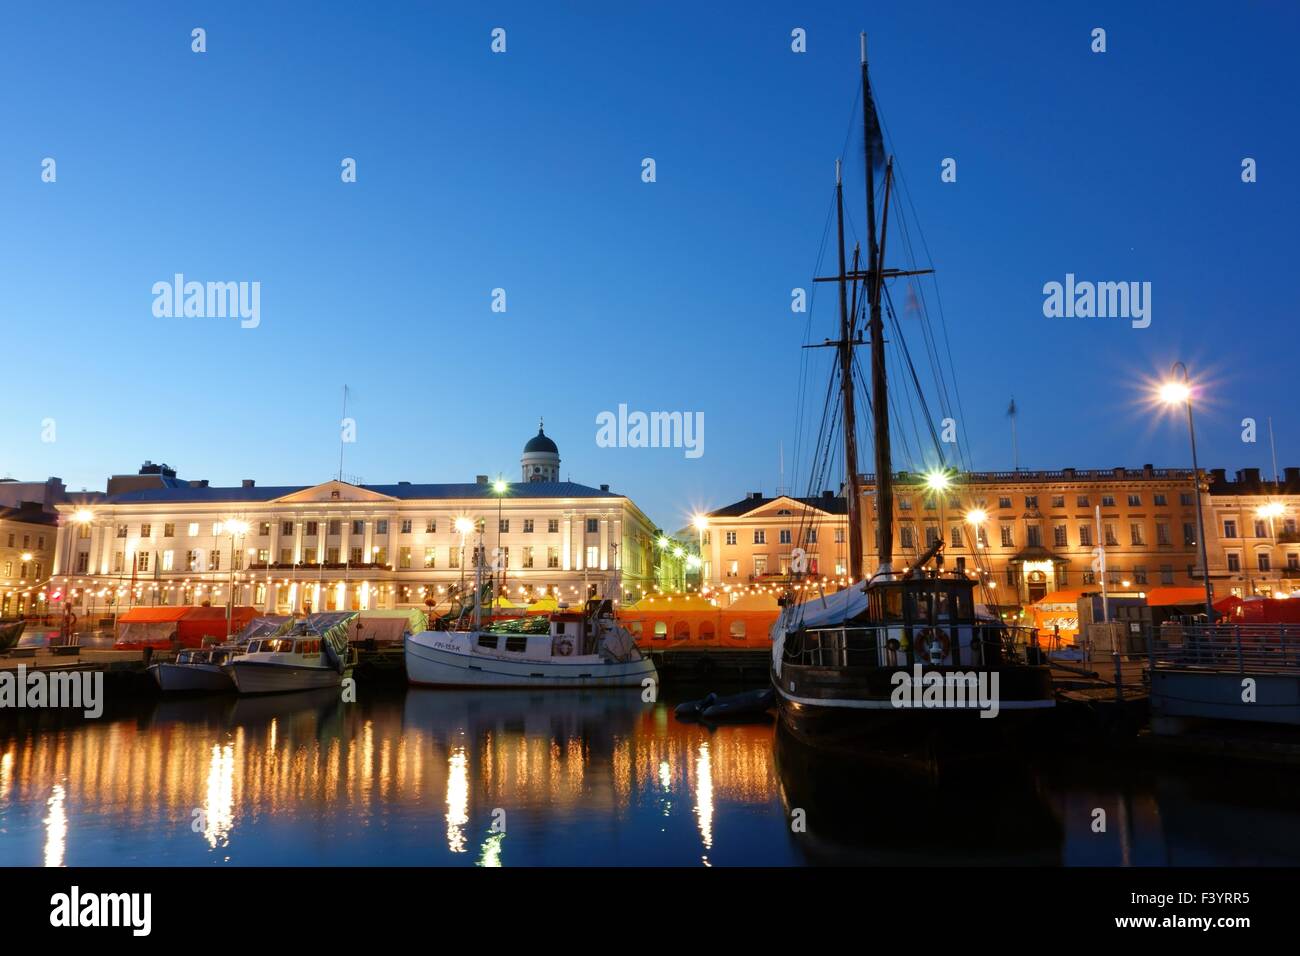 La pesca delle aringhe barche e una nave a vela all'Helsinki Piazza del Mercato a inizio ottobre sera nel corso annuale di Helsinki Aringa del Baltico fiera. Foto Stock